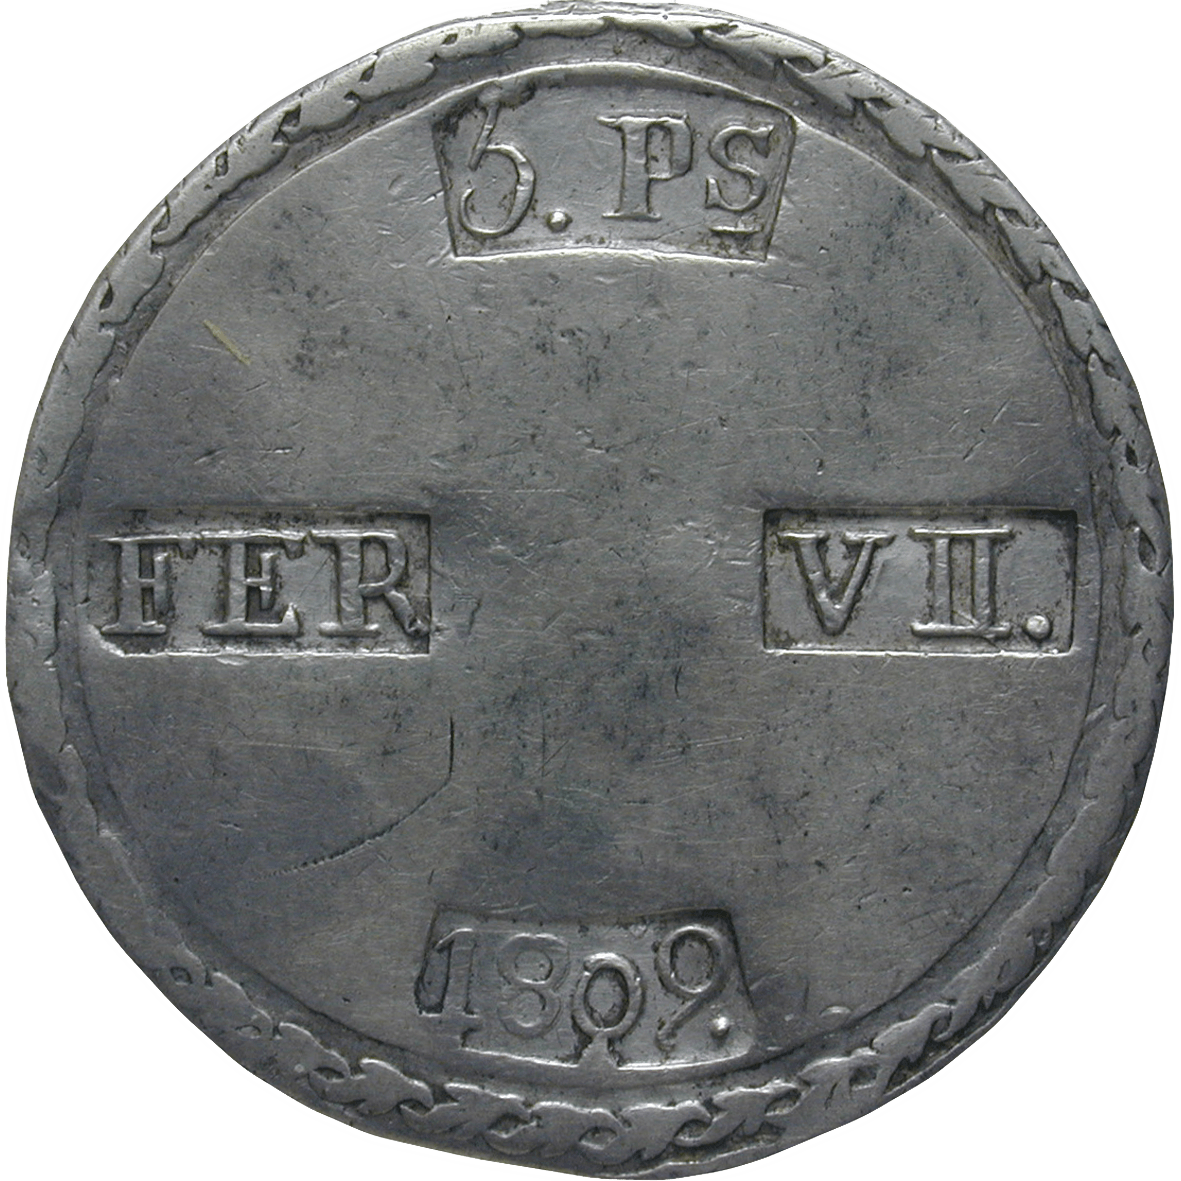 Königreich Spanien, Ferdinand VII., 5 Pesetas 1809 (reverse)